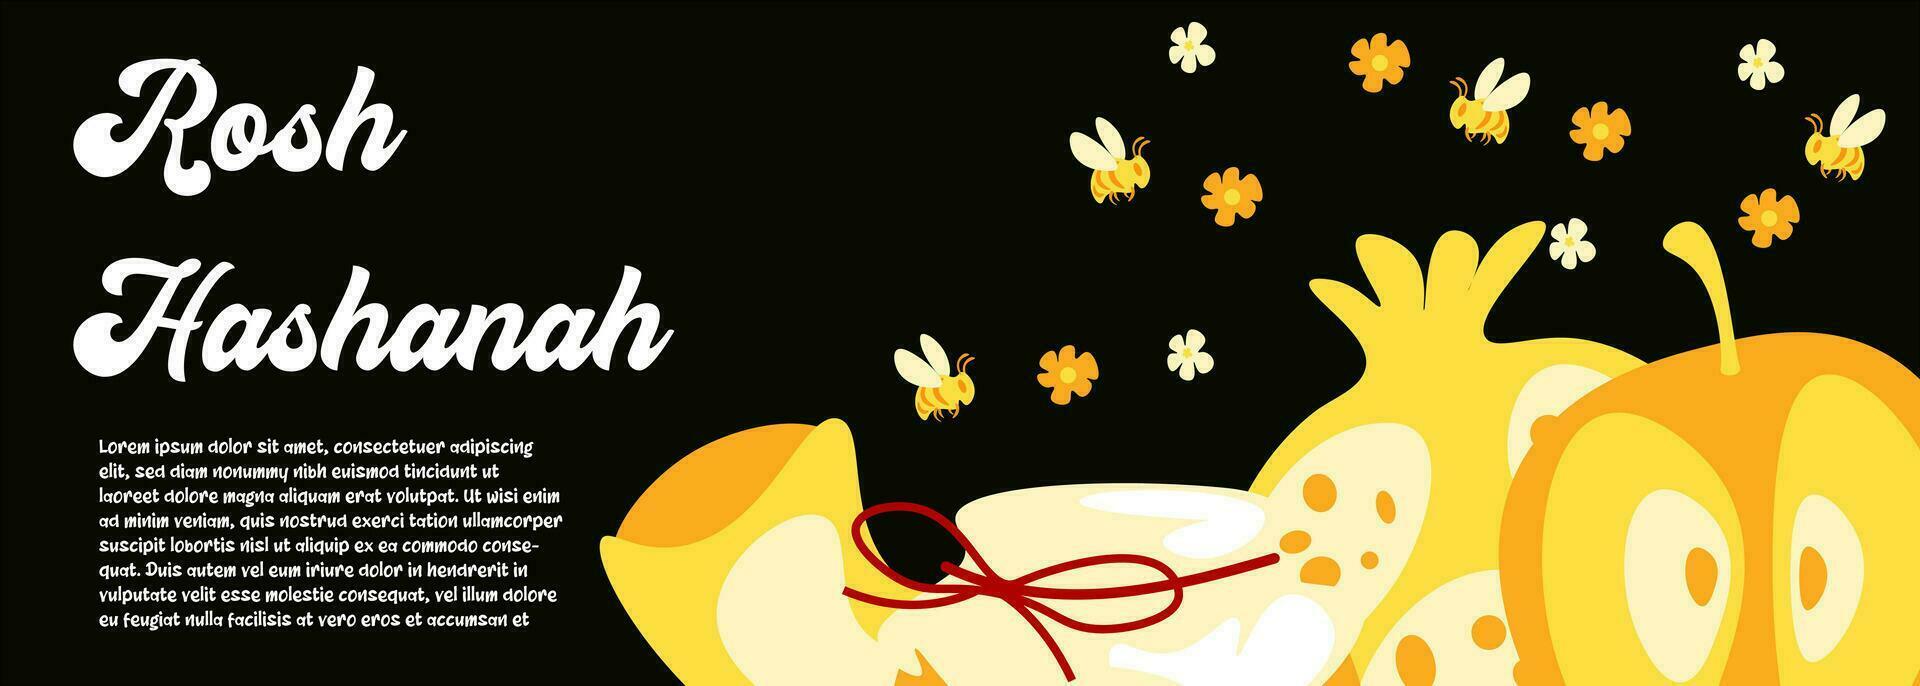 rosh hashanah Gruß Karte. Apfel, Honig, Blume, Granatapfel, Schofar Illustration. rosh hashanah modisch Banner vektor